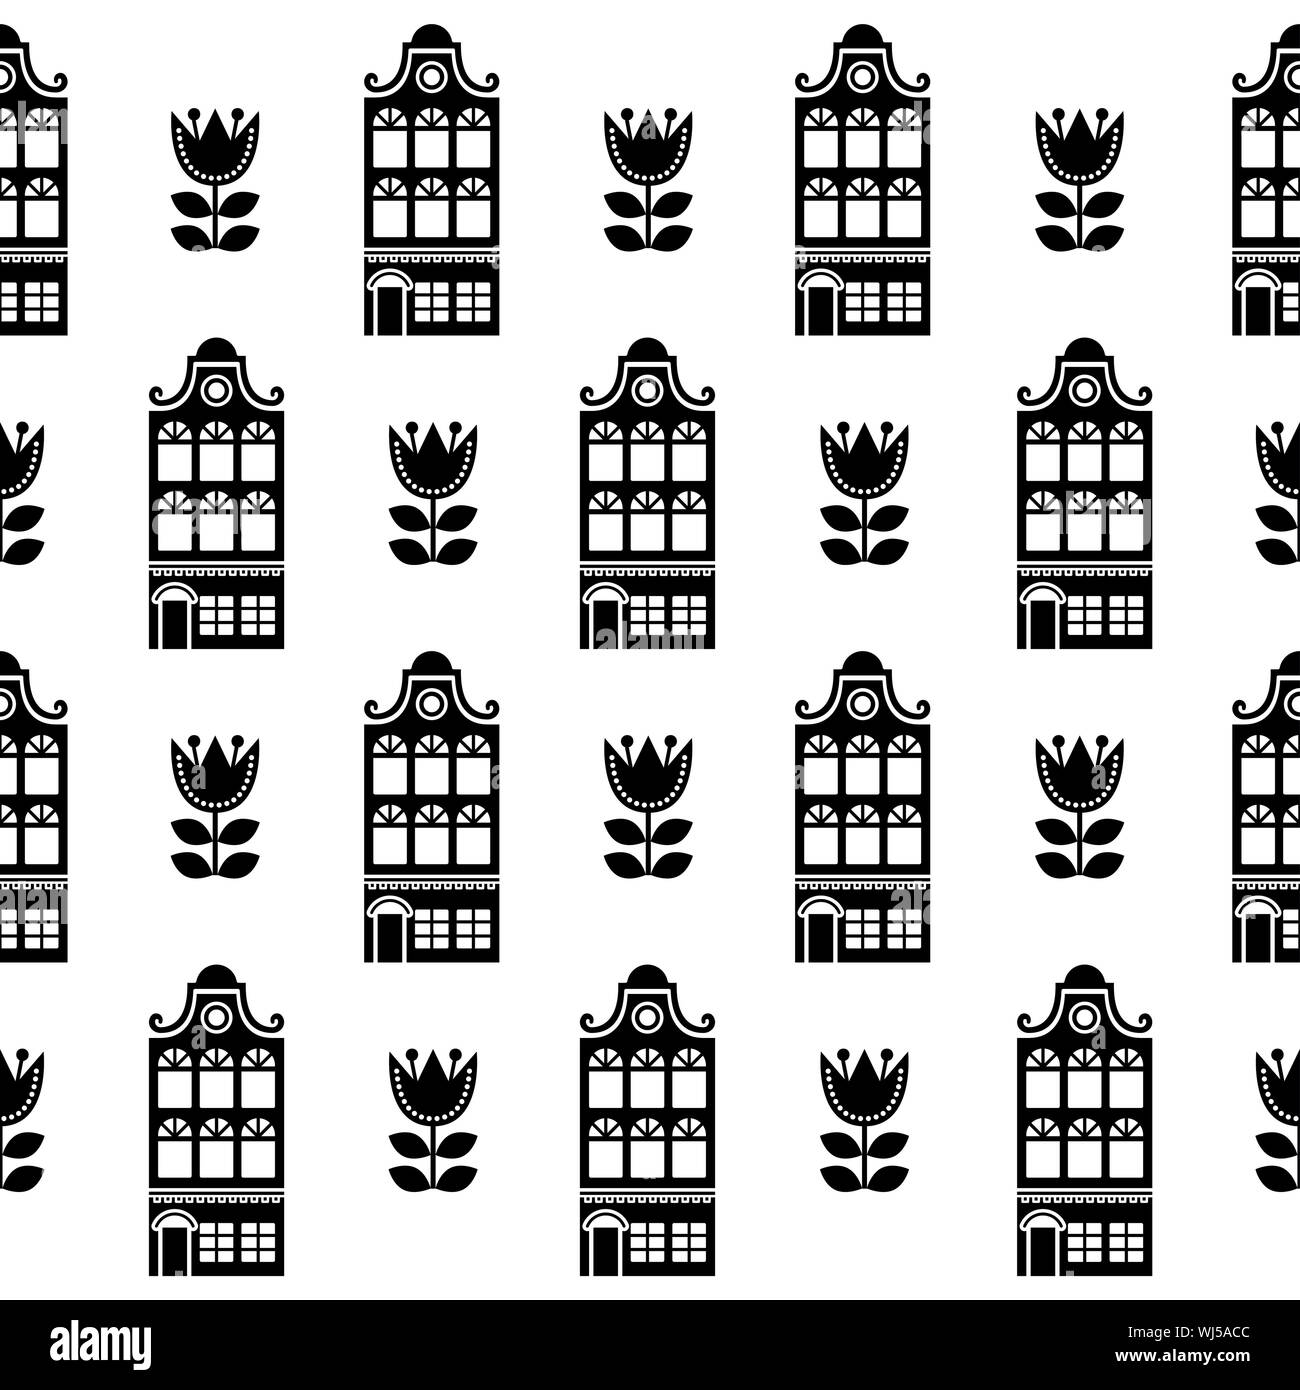 Amsterdam Häuser und Tulpen nahtlose Vektor Muster, holländische Gebäude, Holland oder Niederlande archictecture Hintergrund in Schwarz und Weiß Stock Vektor